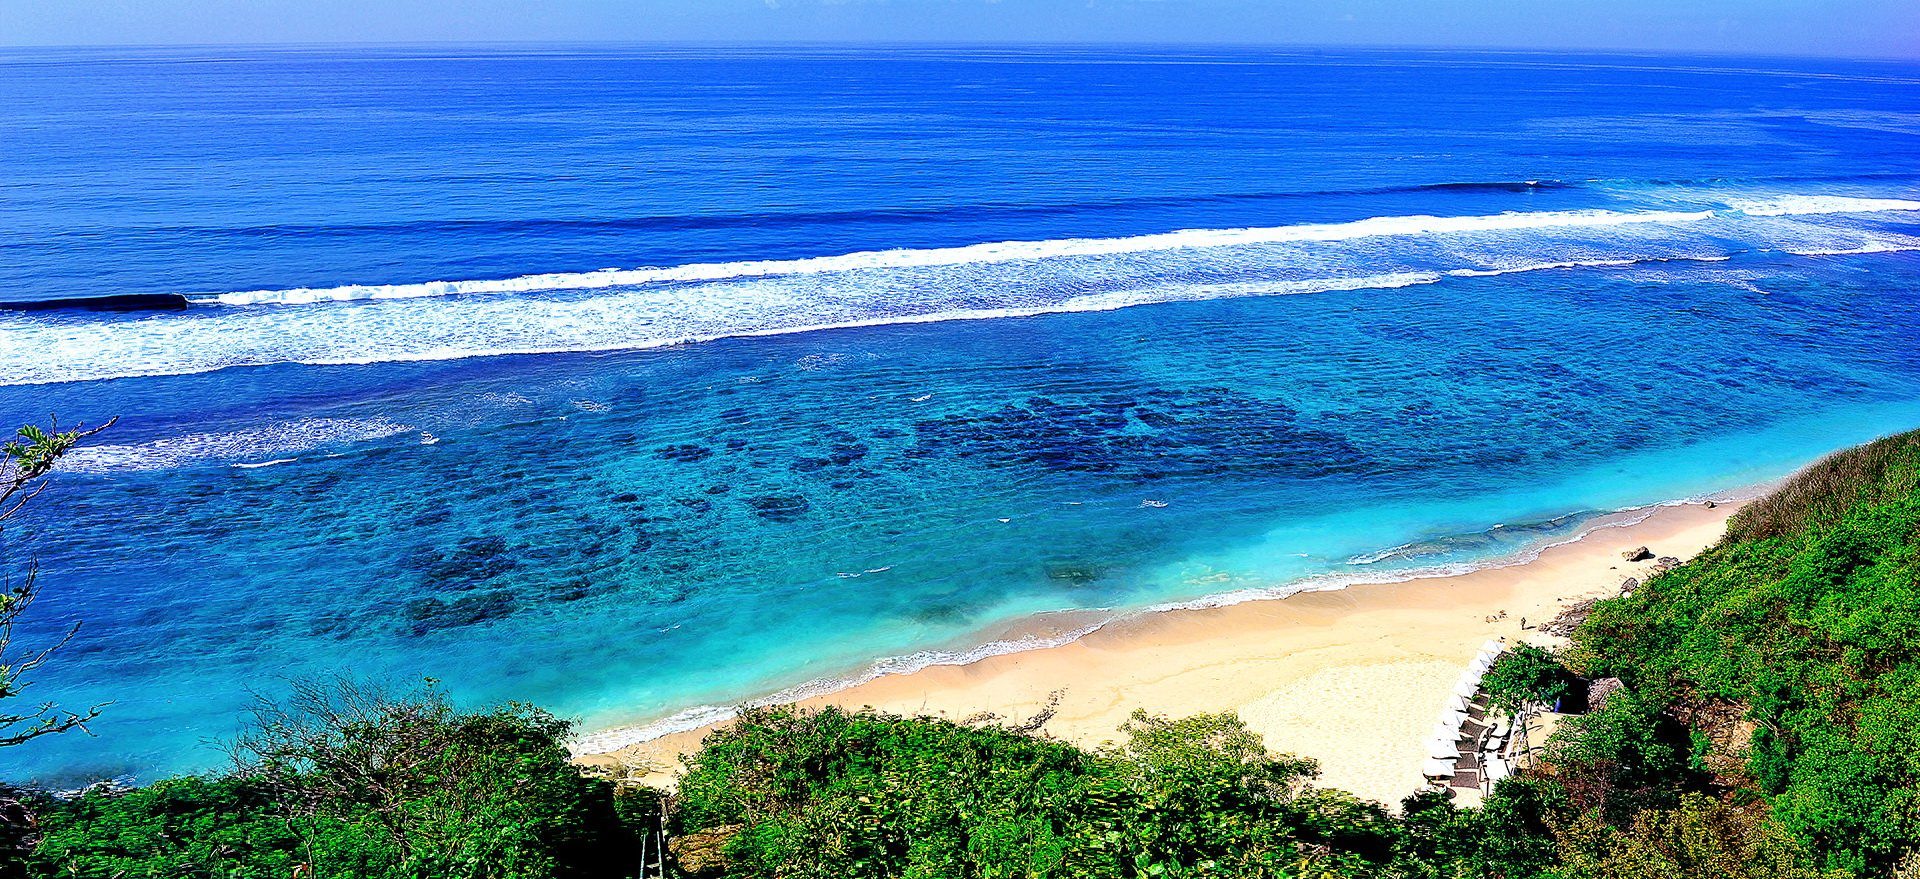 Бесплатный индийский океан. Индийский океан Бали. Бали тихий океан. Бали море. Просторы индийского океана.